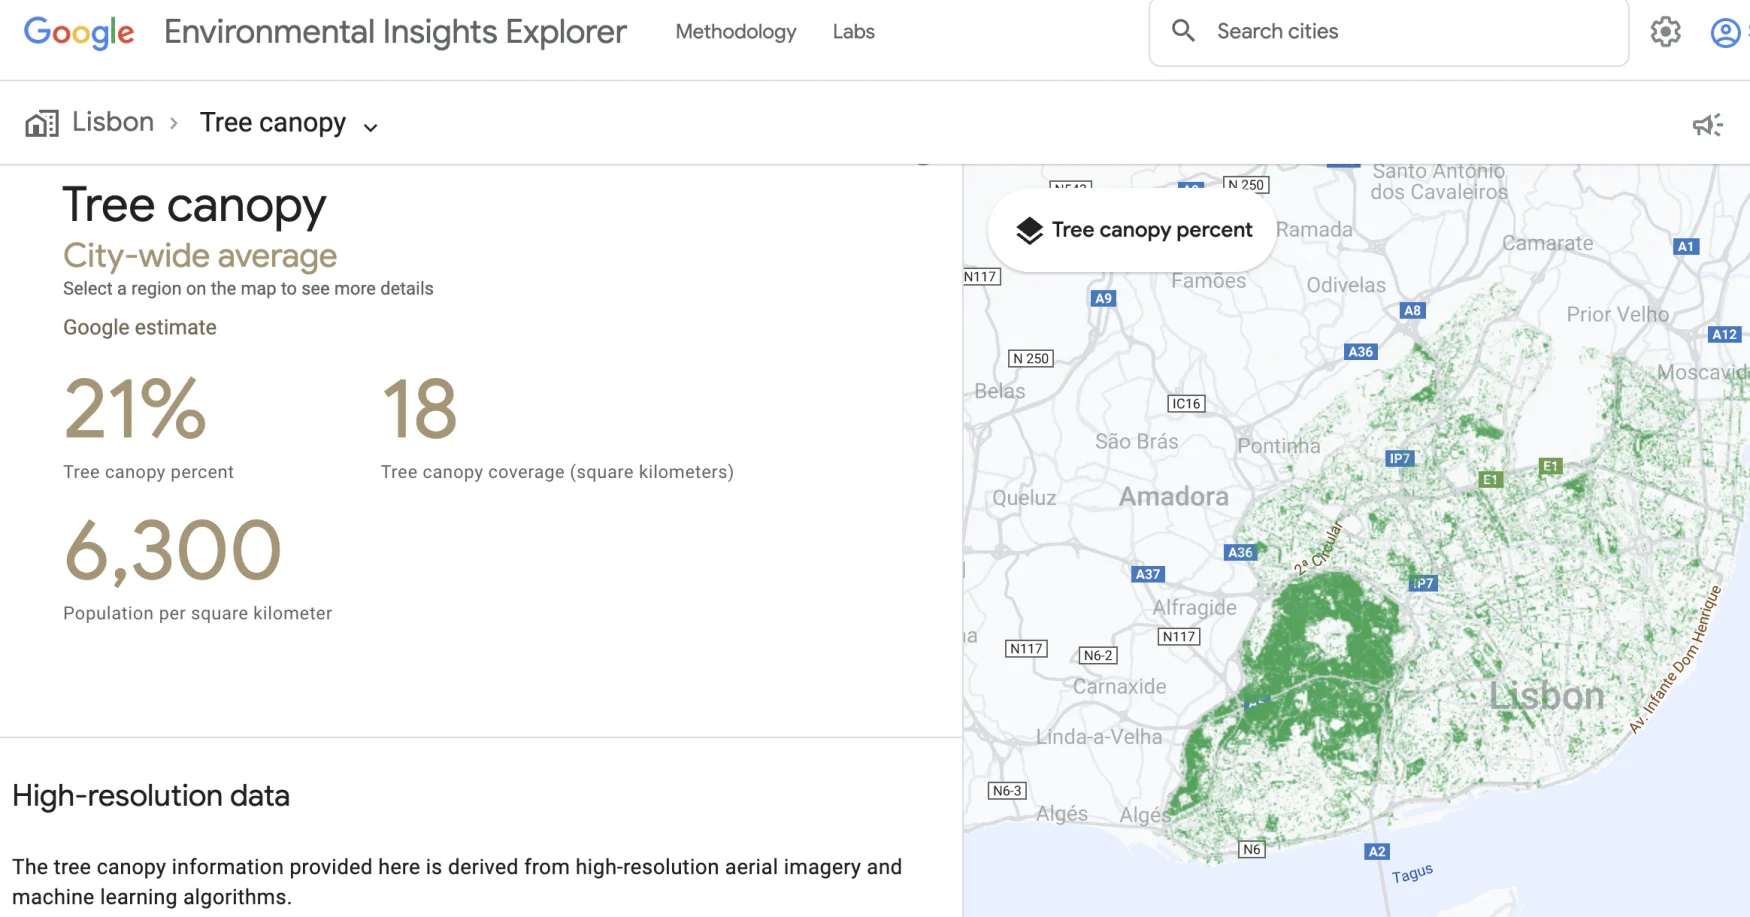 tangkapan layar Google EIE yang menunjukkan cakupan kanopi pohon di seluruh kota di Lisbon Spanyol.